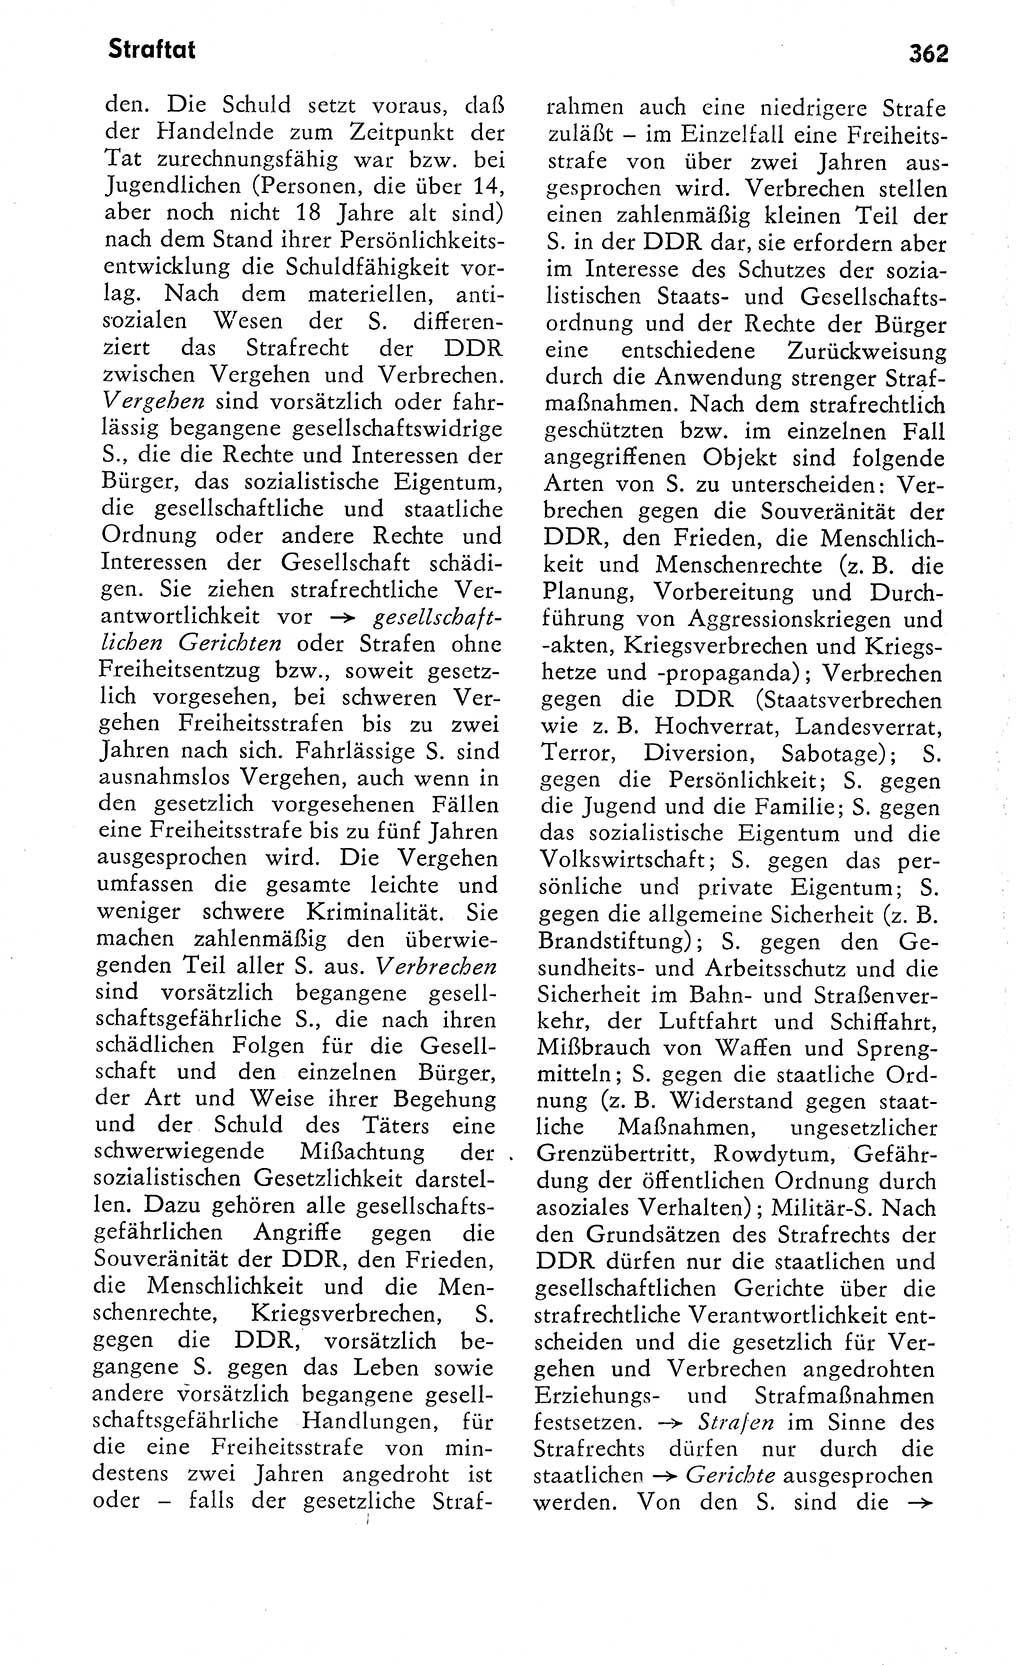 Wörterbuch zum sozialistischen Staat [Deutsche Demokratische Republik (DDR)] 1974, Seite 362 (Wb. soz. St. DDR 1974, S. 362)